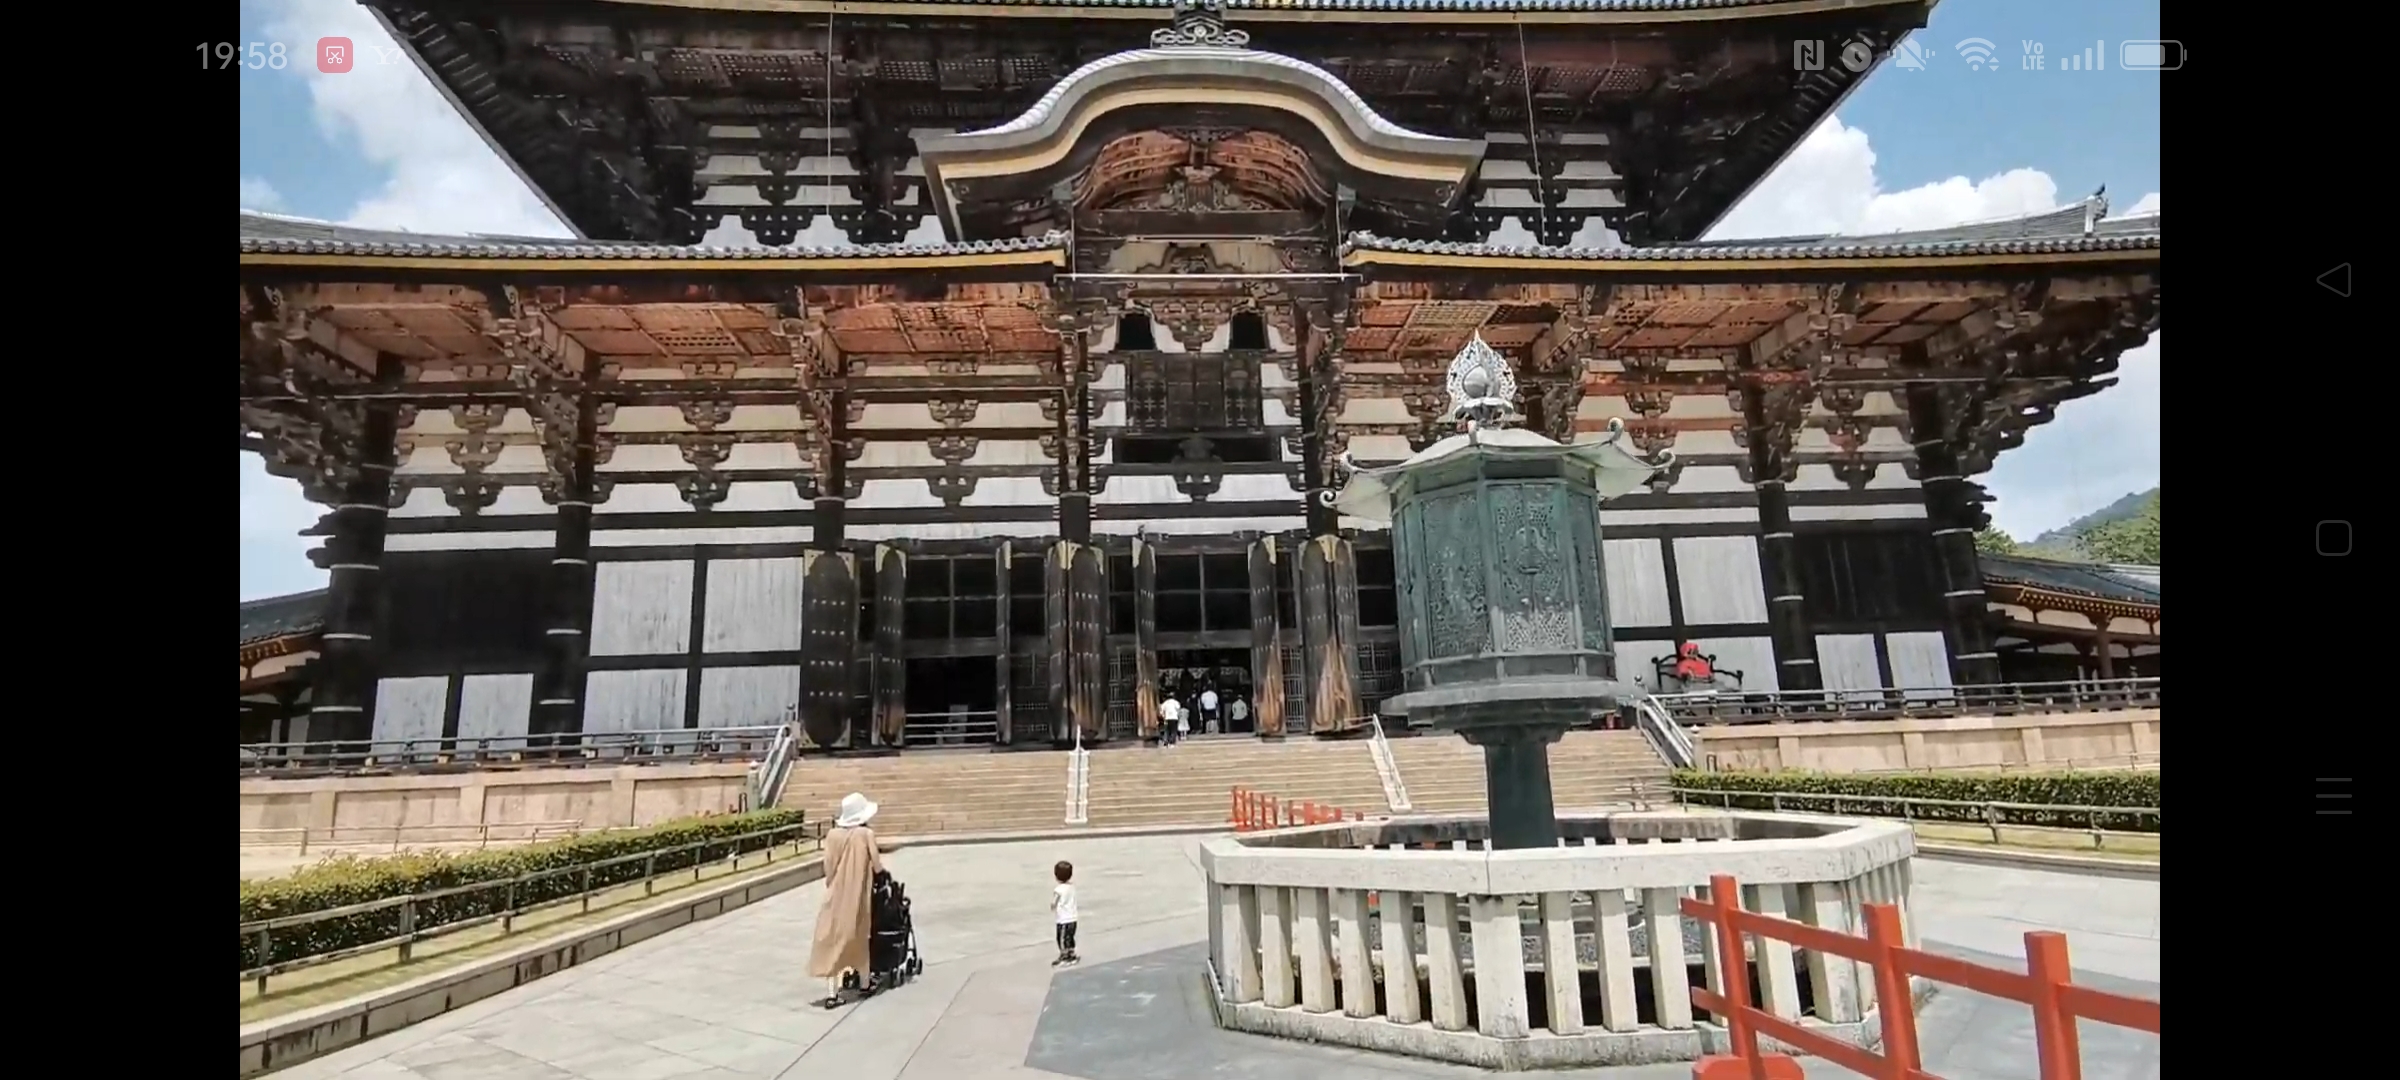 東大寺大仏殿の高さは、奈良県内の建物の高さランキング何位？